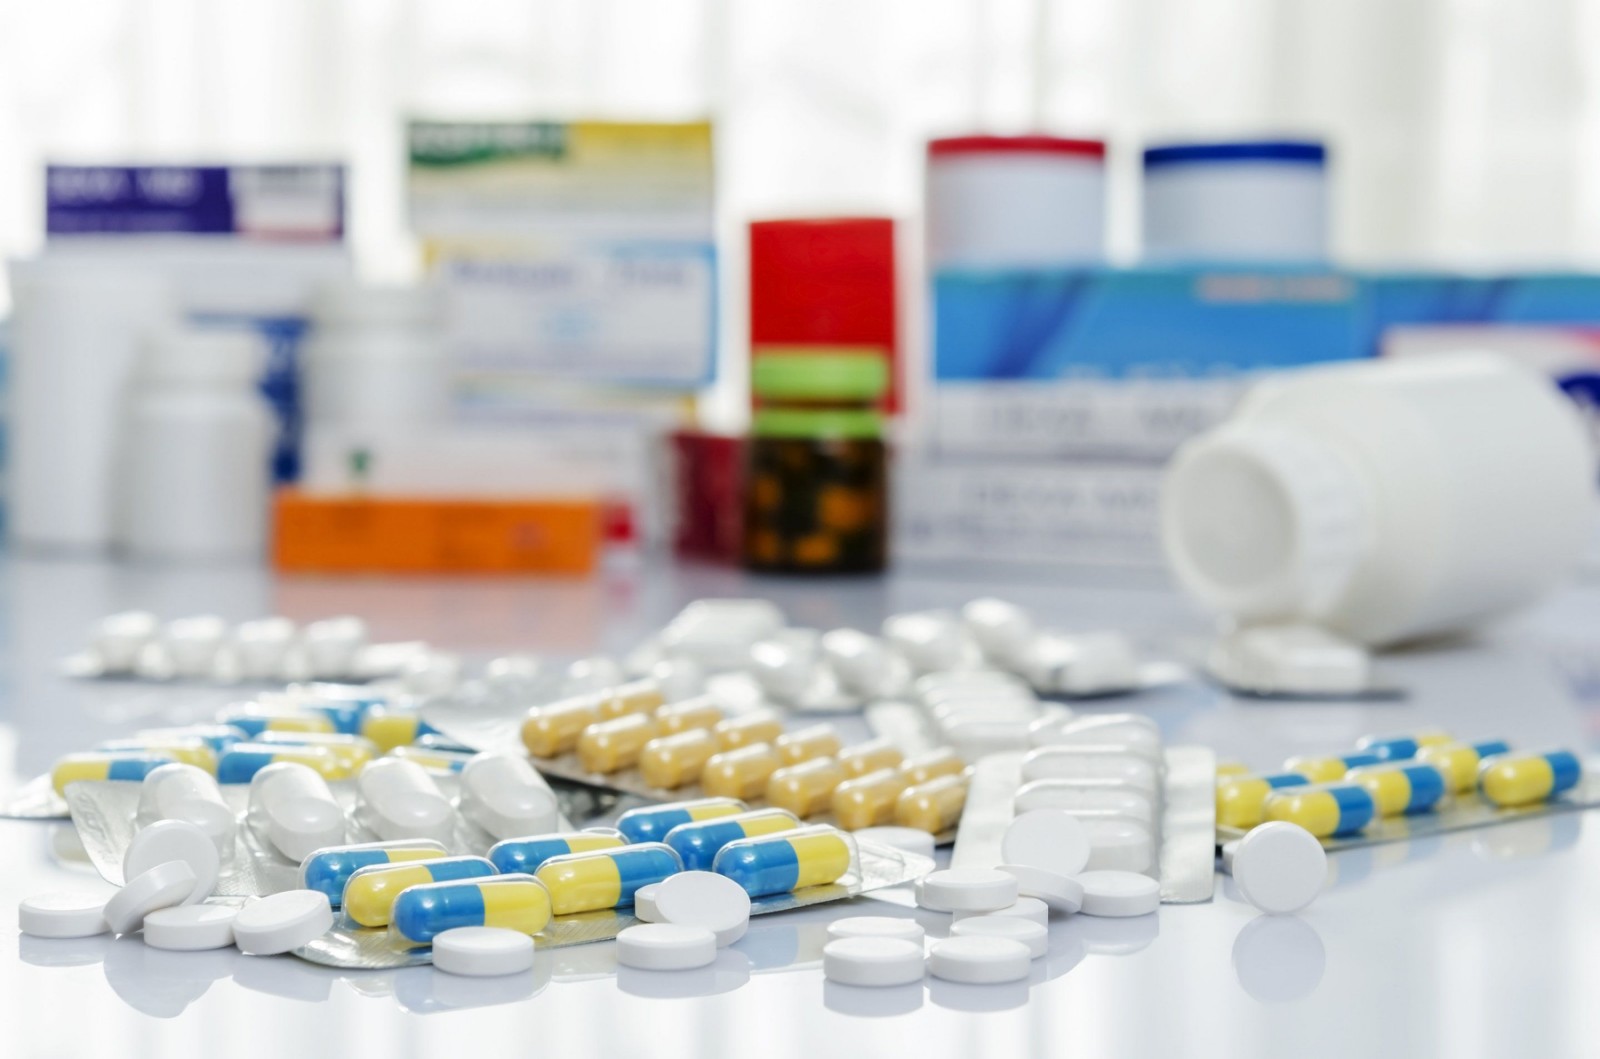 За год украинцы потратили 14 миллиардов гривен на лекарства, не имеющие никакого эффекта: что входит в этот список?